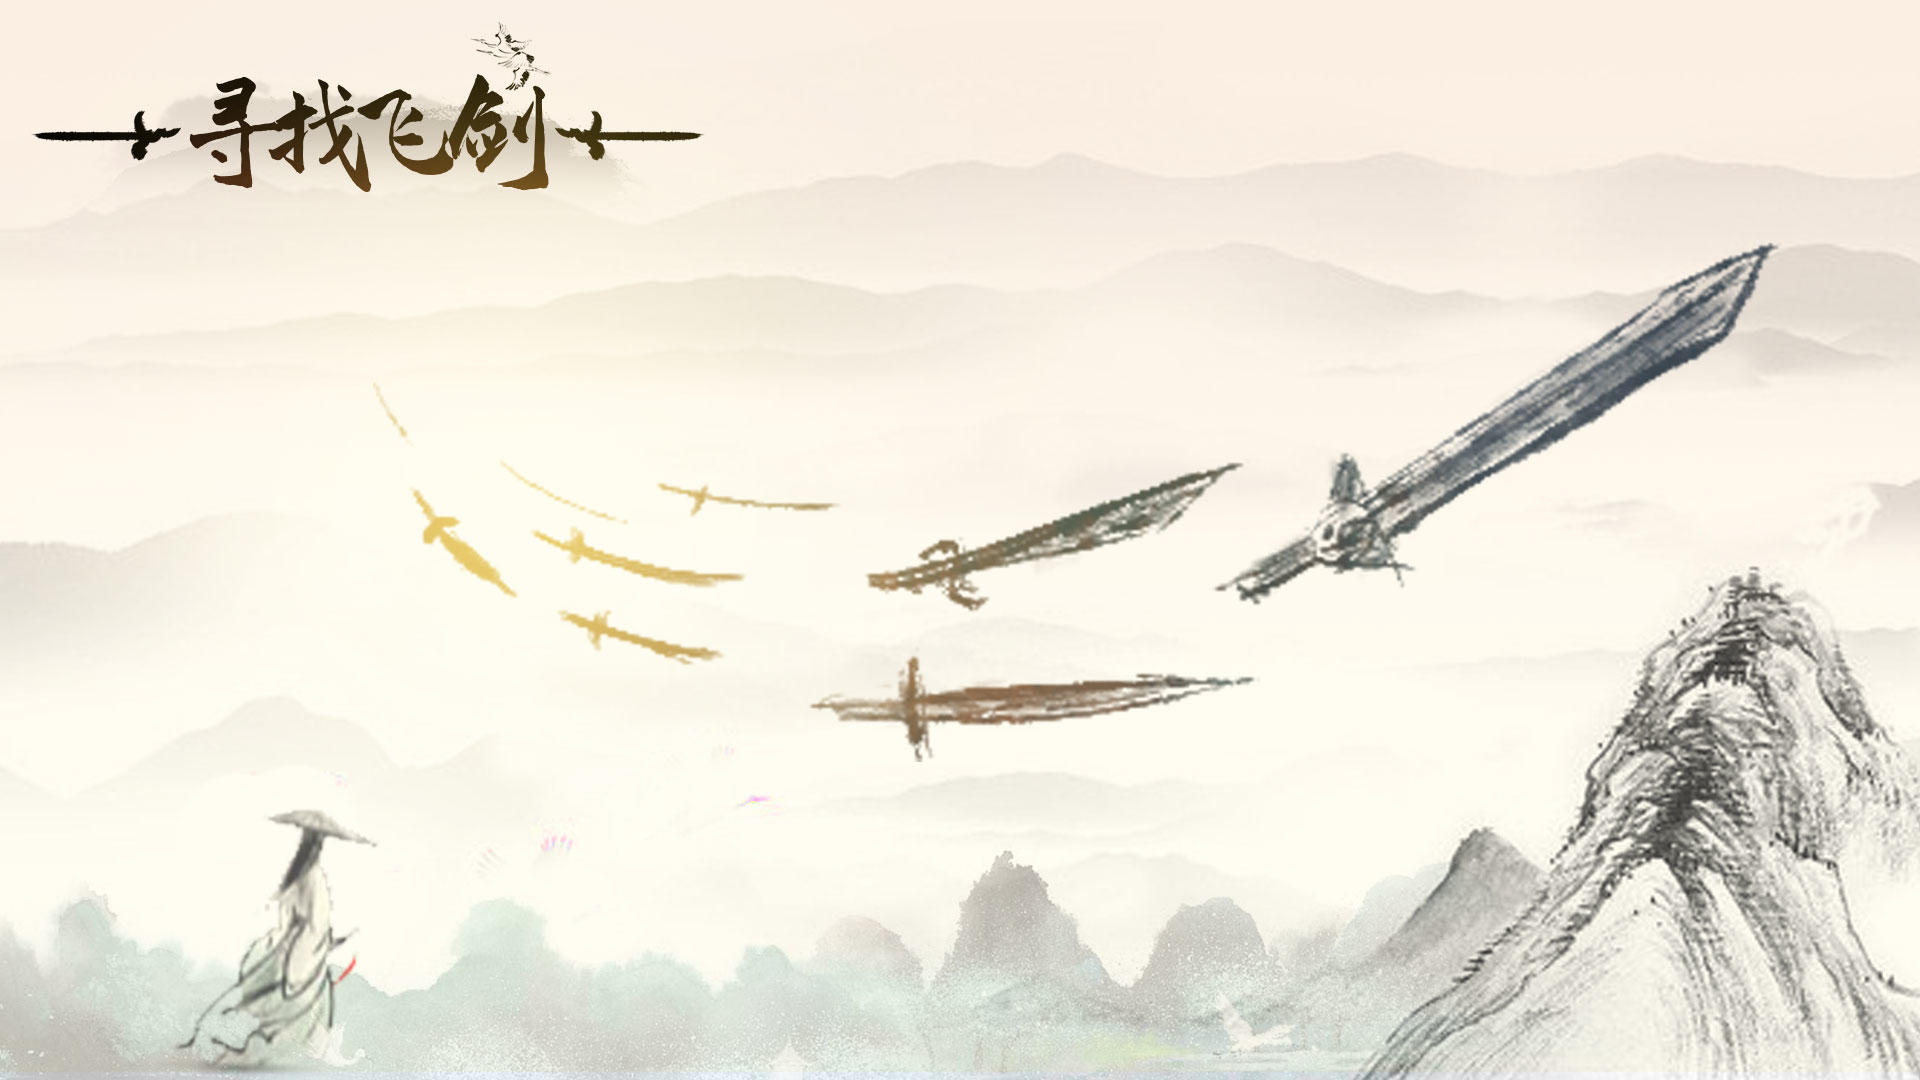 Banner of mencari pedang terbang 1.0